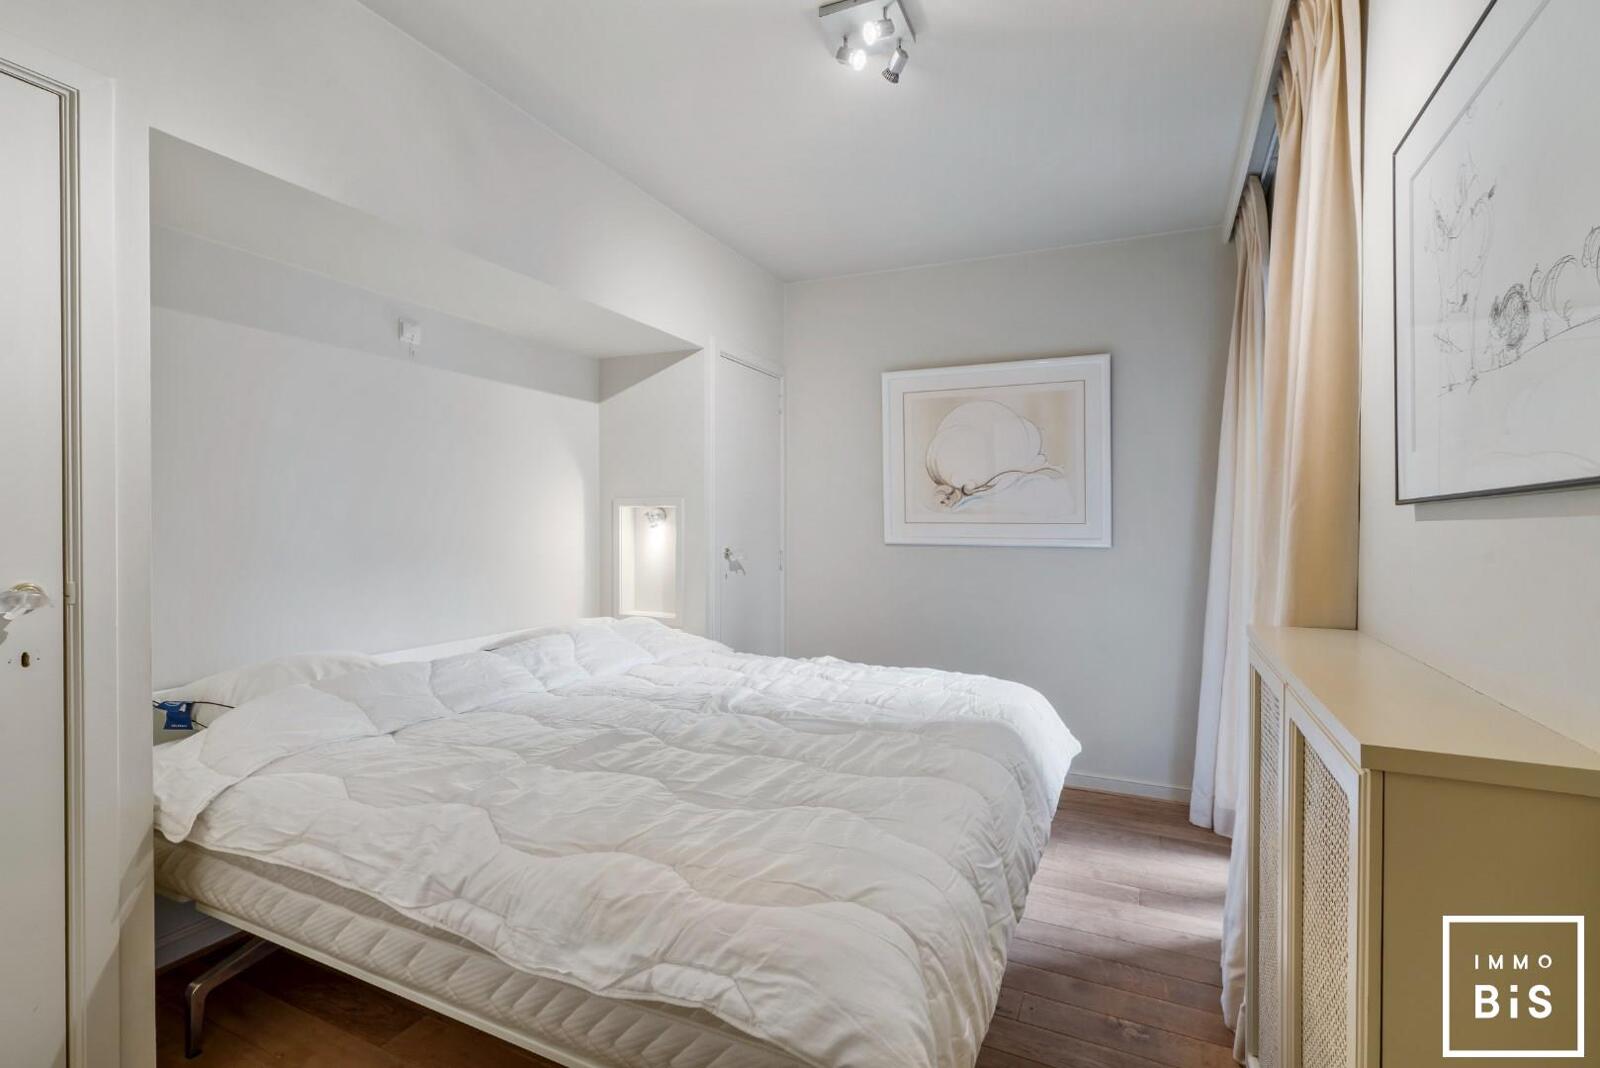 Appartement avec 3 chambres à coucher très bien situé en face du Minigolf du Zoute! 8